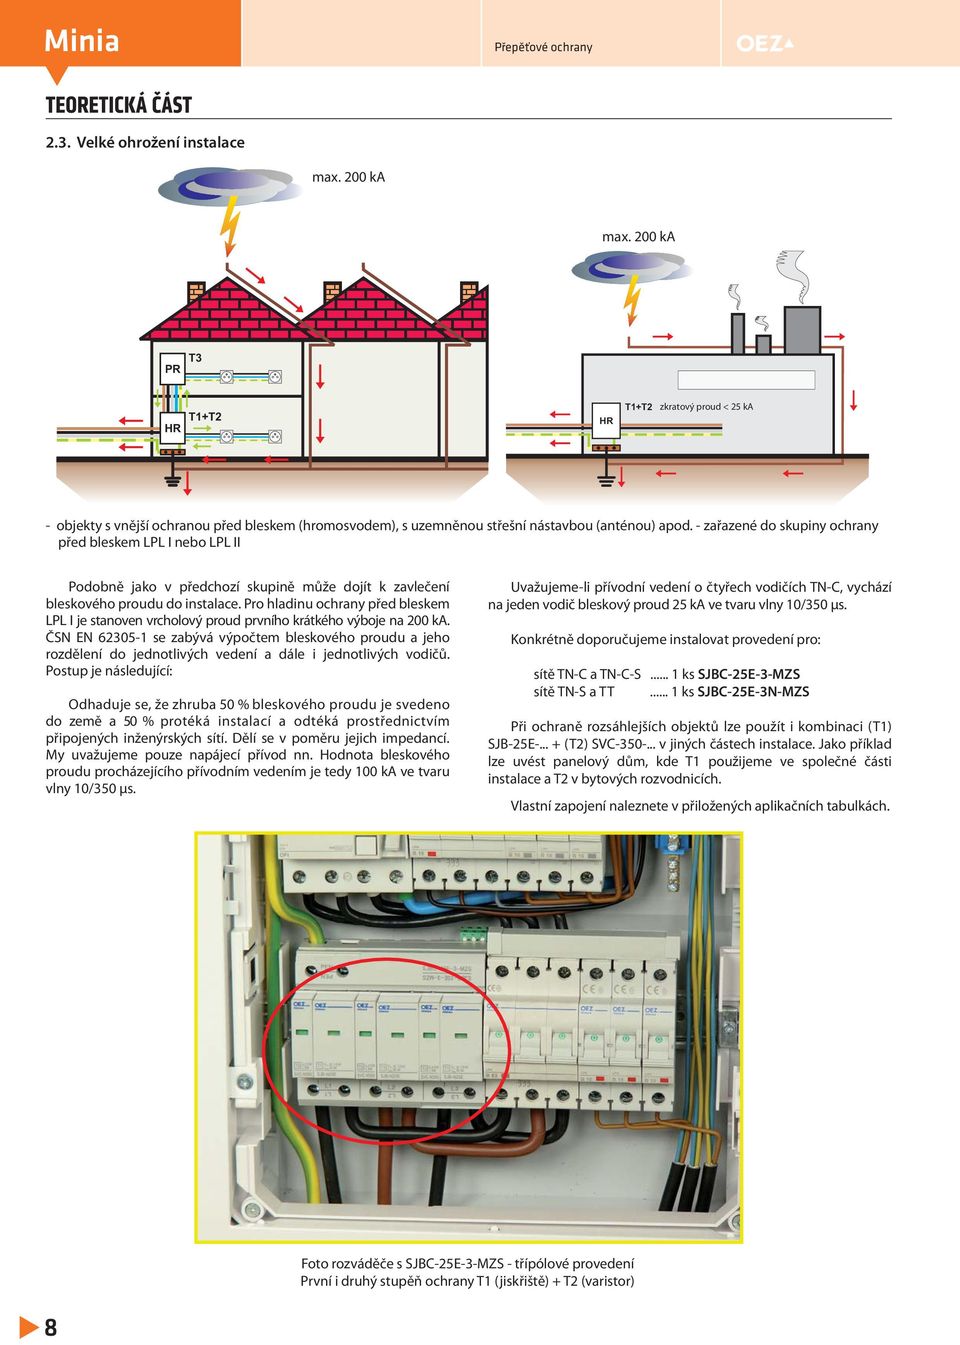 - zařazené do skupiny ochrany před bleskem LPL I nebo LPL II Podobně jako v předchozí skupině může dojít k zavlečení bleskového proudu do instalace.